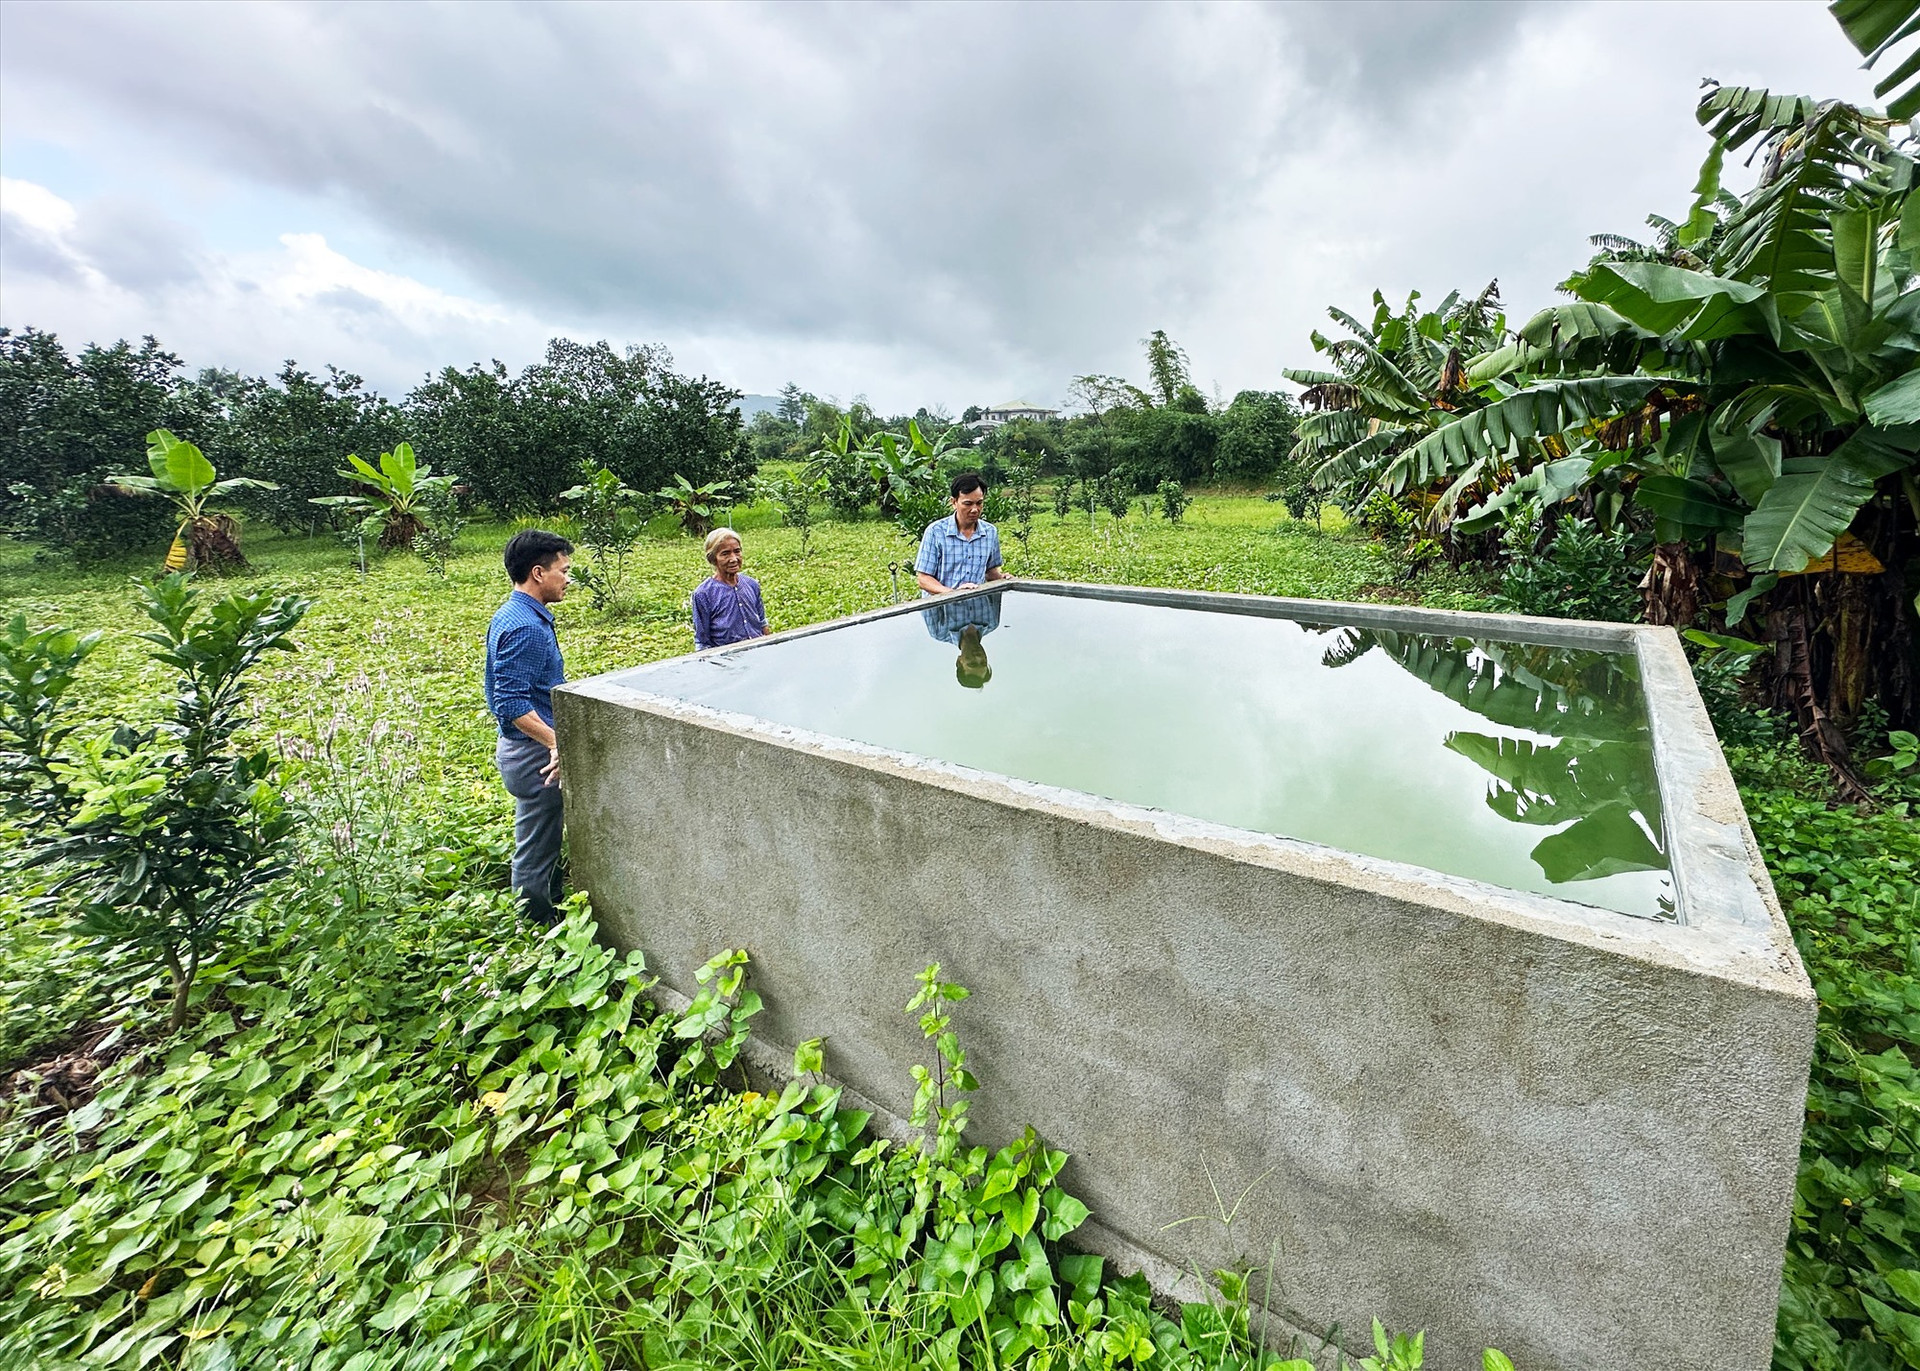 Các hộ dân được hỗ trợ hệ thống tưới nước để chăm sóc vườn cây ăn quả. Ảnh: PHAN VINH